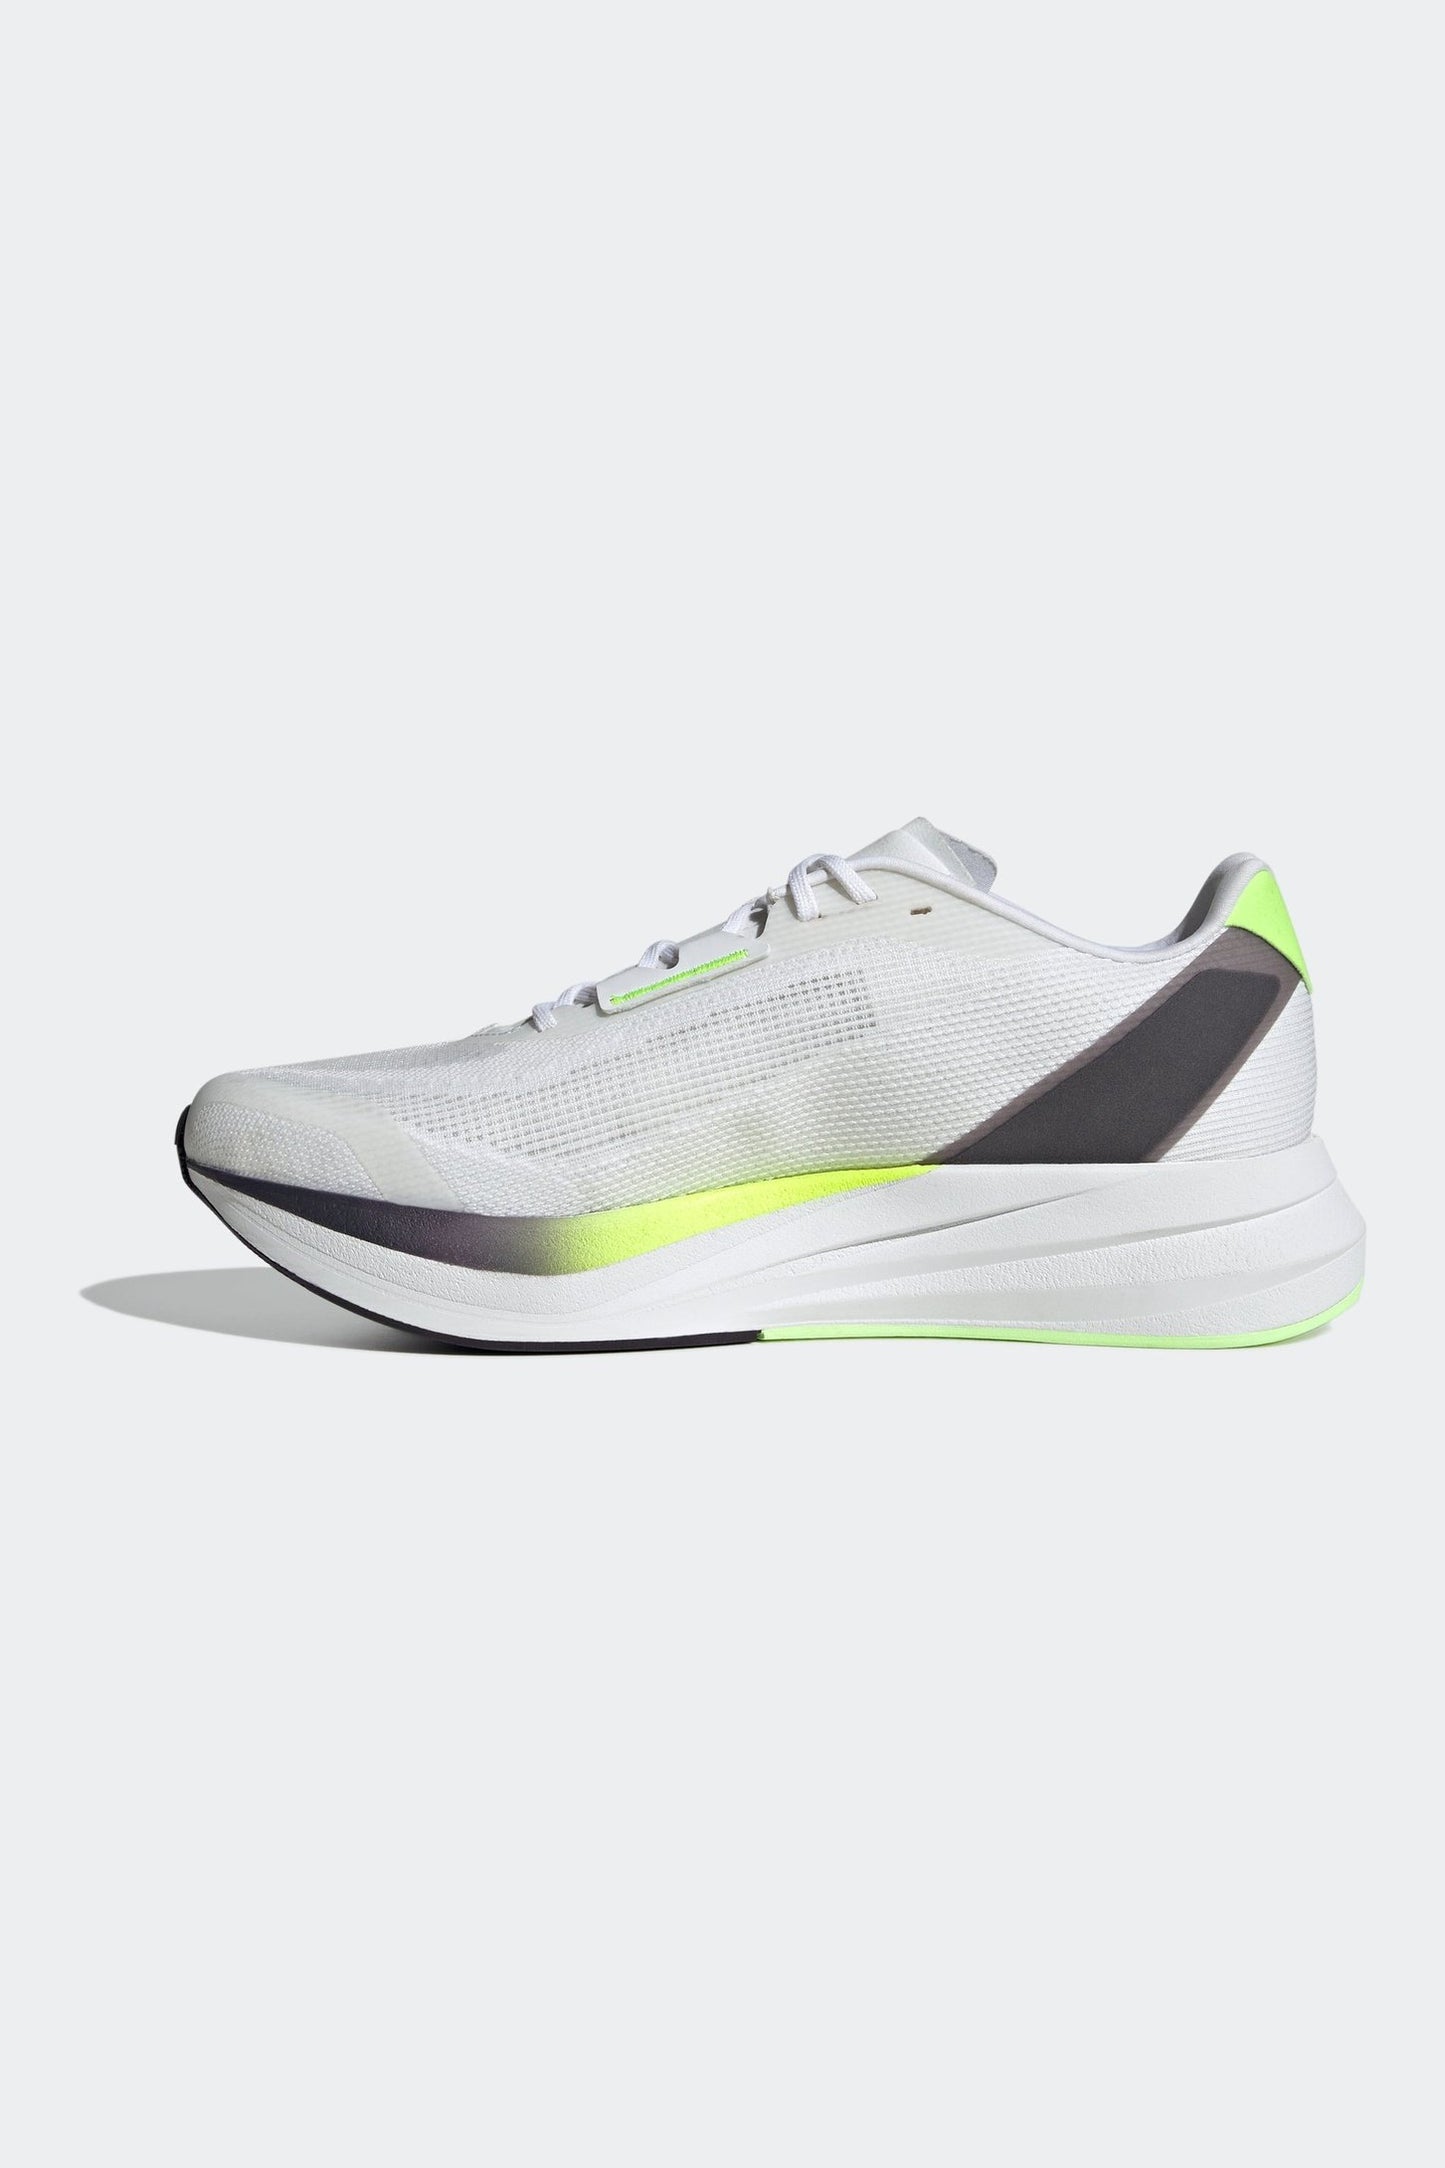 נעלי ספורט לגברים DURAMO SPEED בצבע שחור לבן וצהוב זוהר